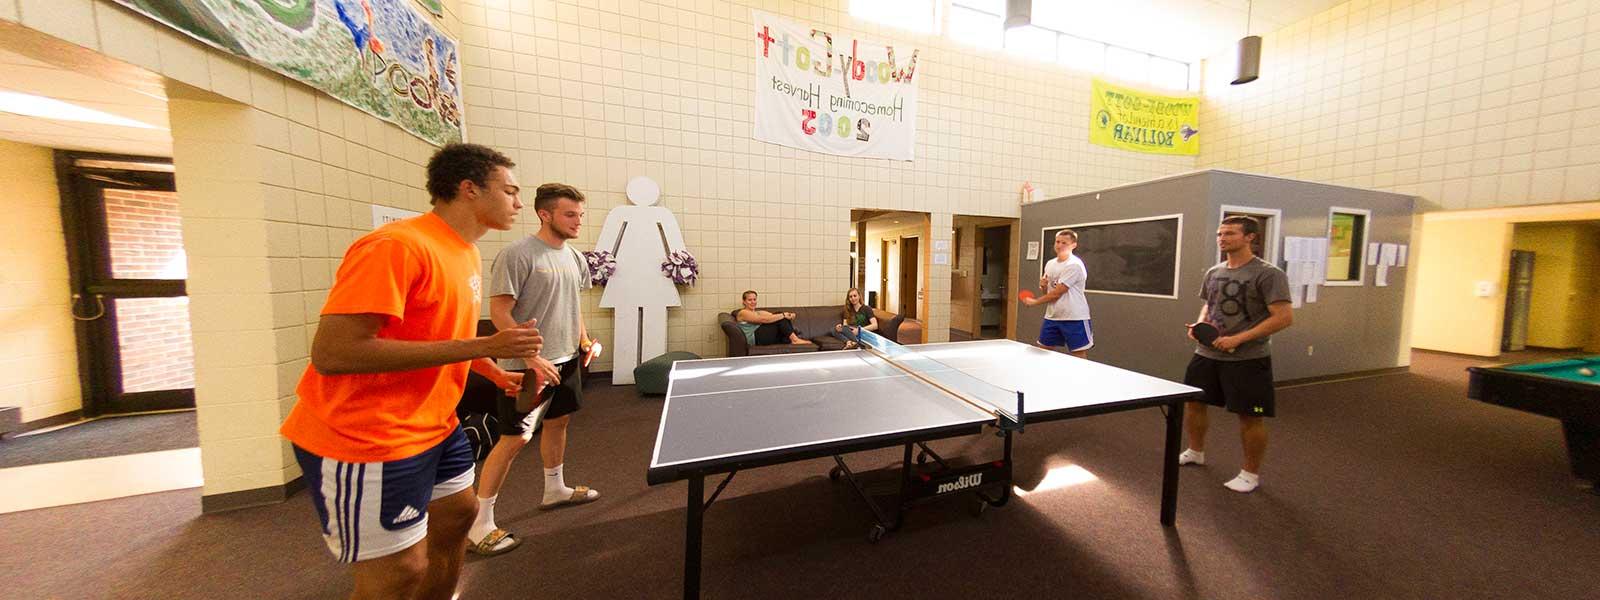 学生们在宿舍大厅打乒乓球